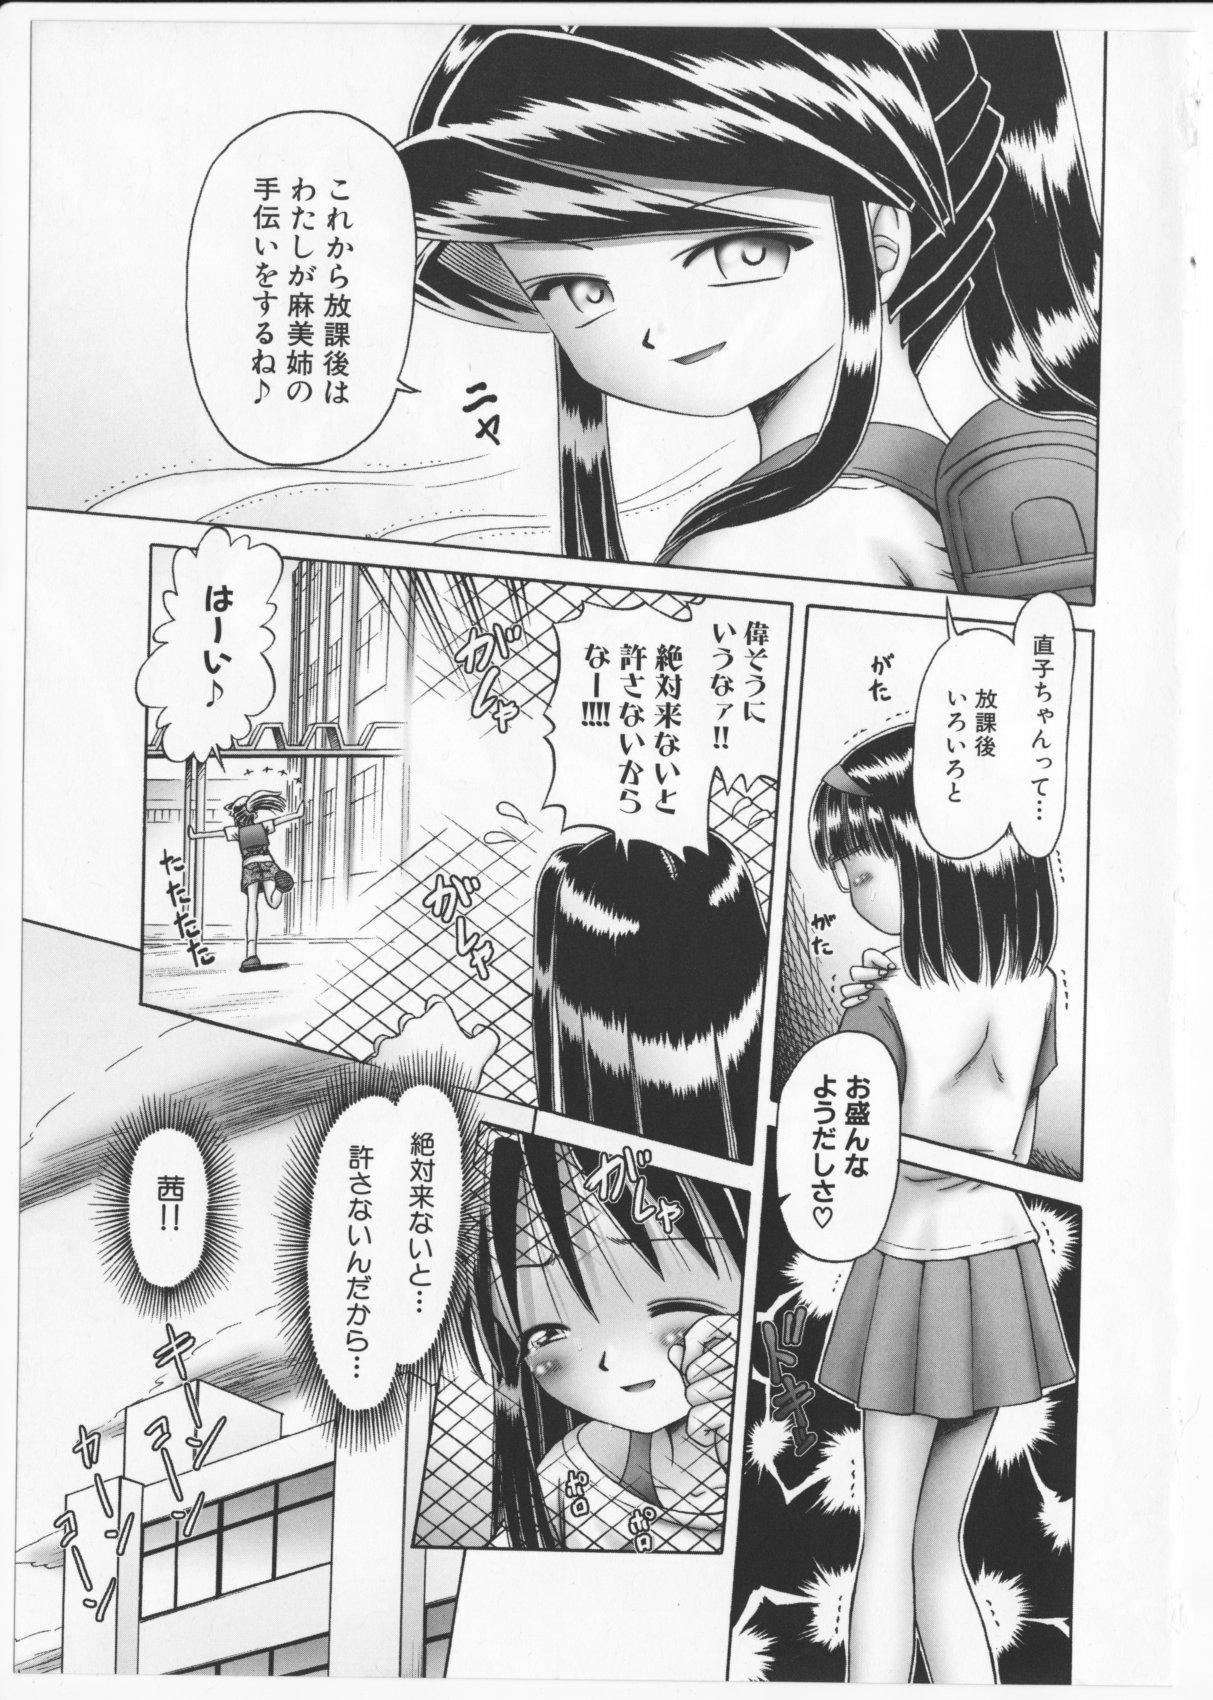 Teen Blowjob Himitsu no Hanazono 2 - The Secret Garden 2 Morocha - Page 8